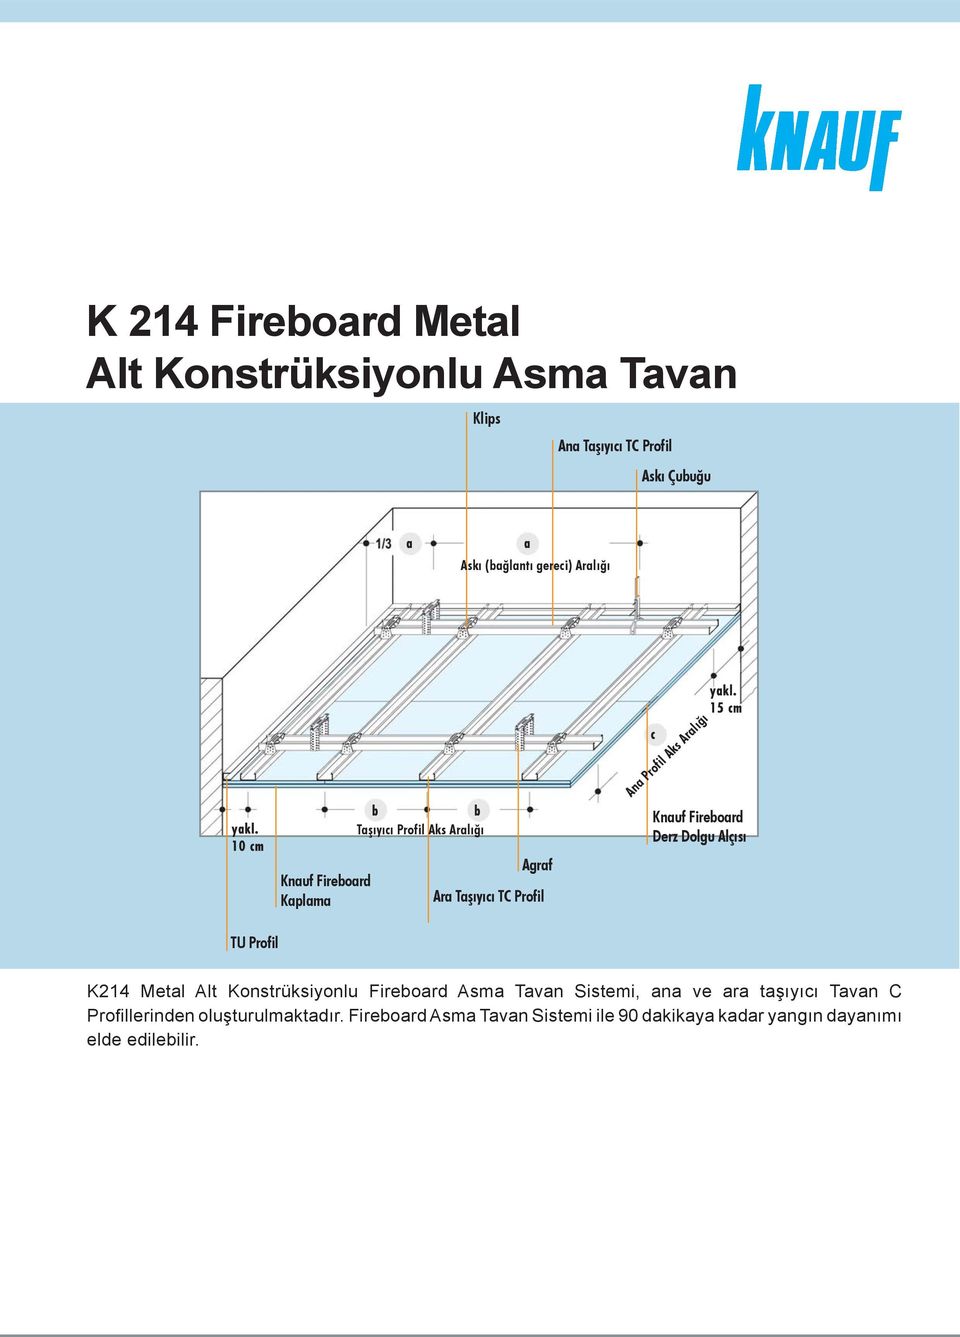 Dolgu Alçısı TU Profil K214 Metal Alt Konstrüksiyonlu Fireboard Asma Tavan Sistemi, ana ve ara taşıyıcı Tavan C